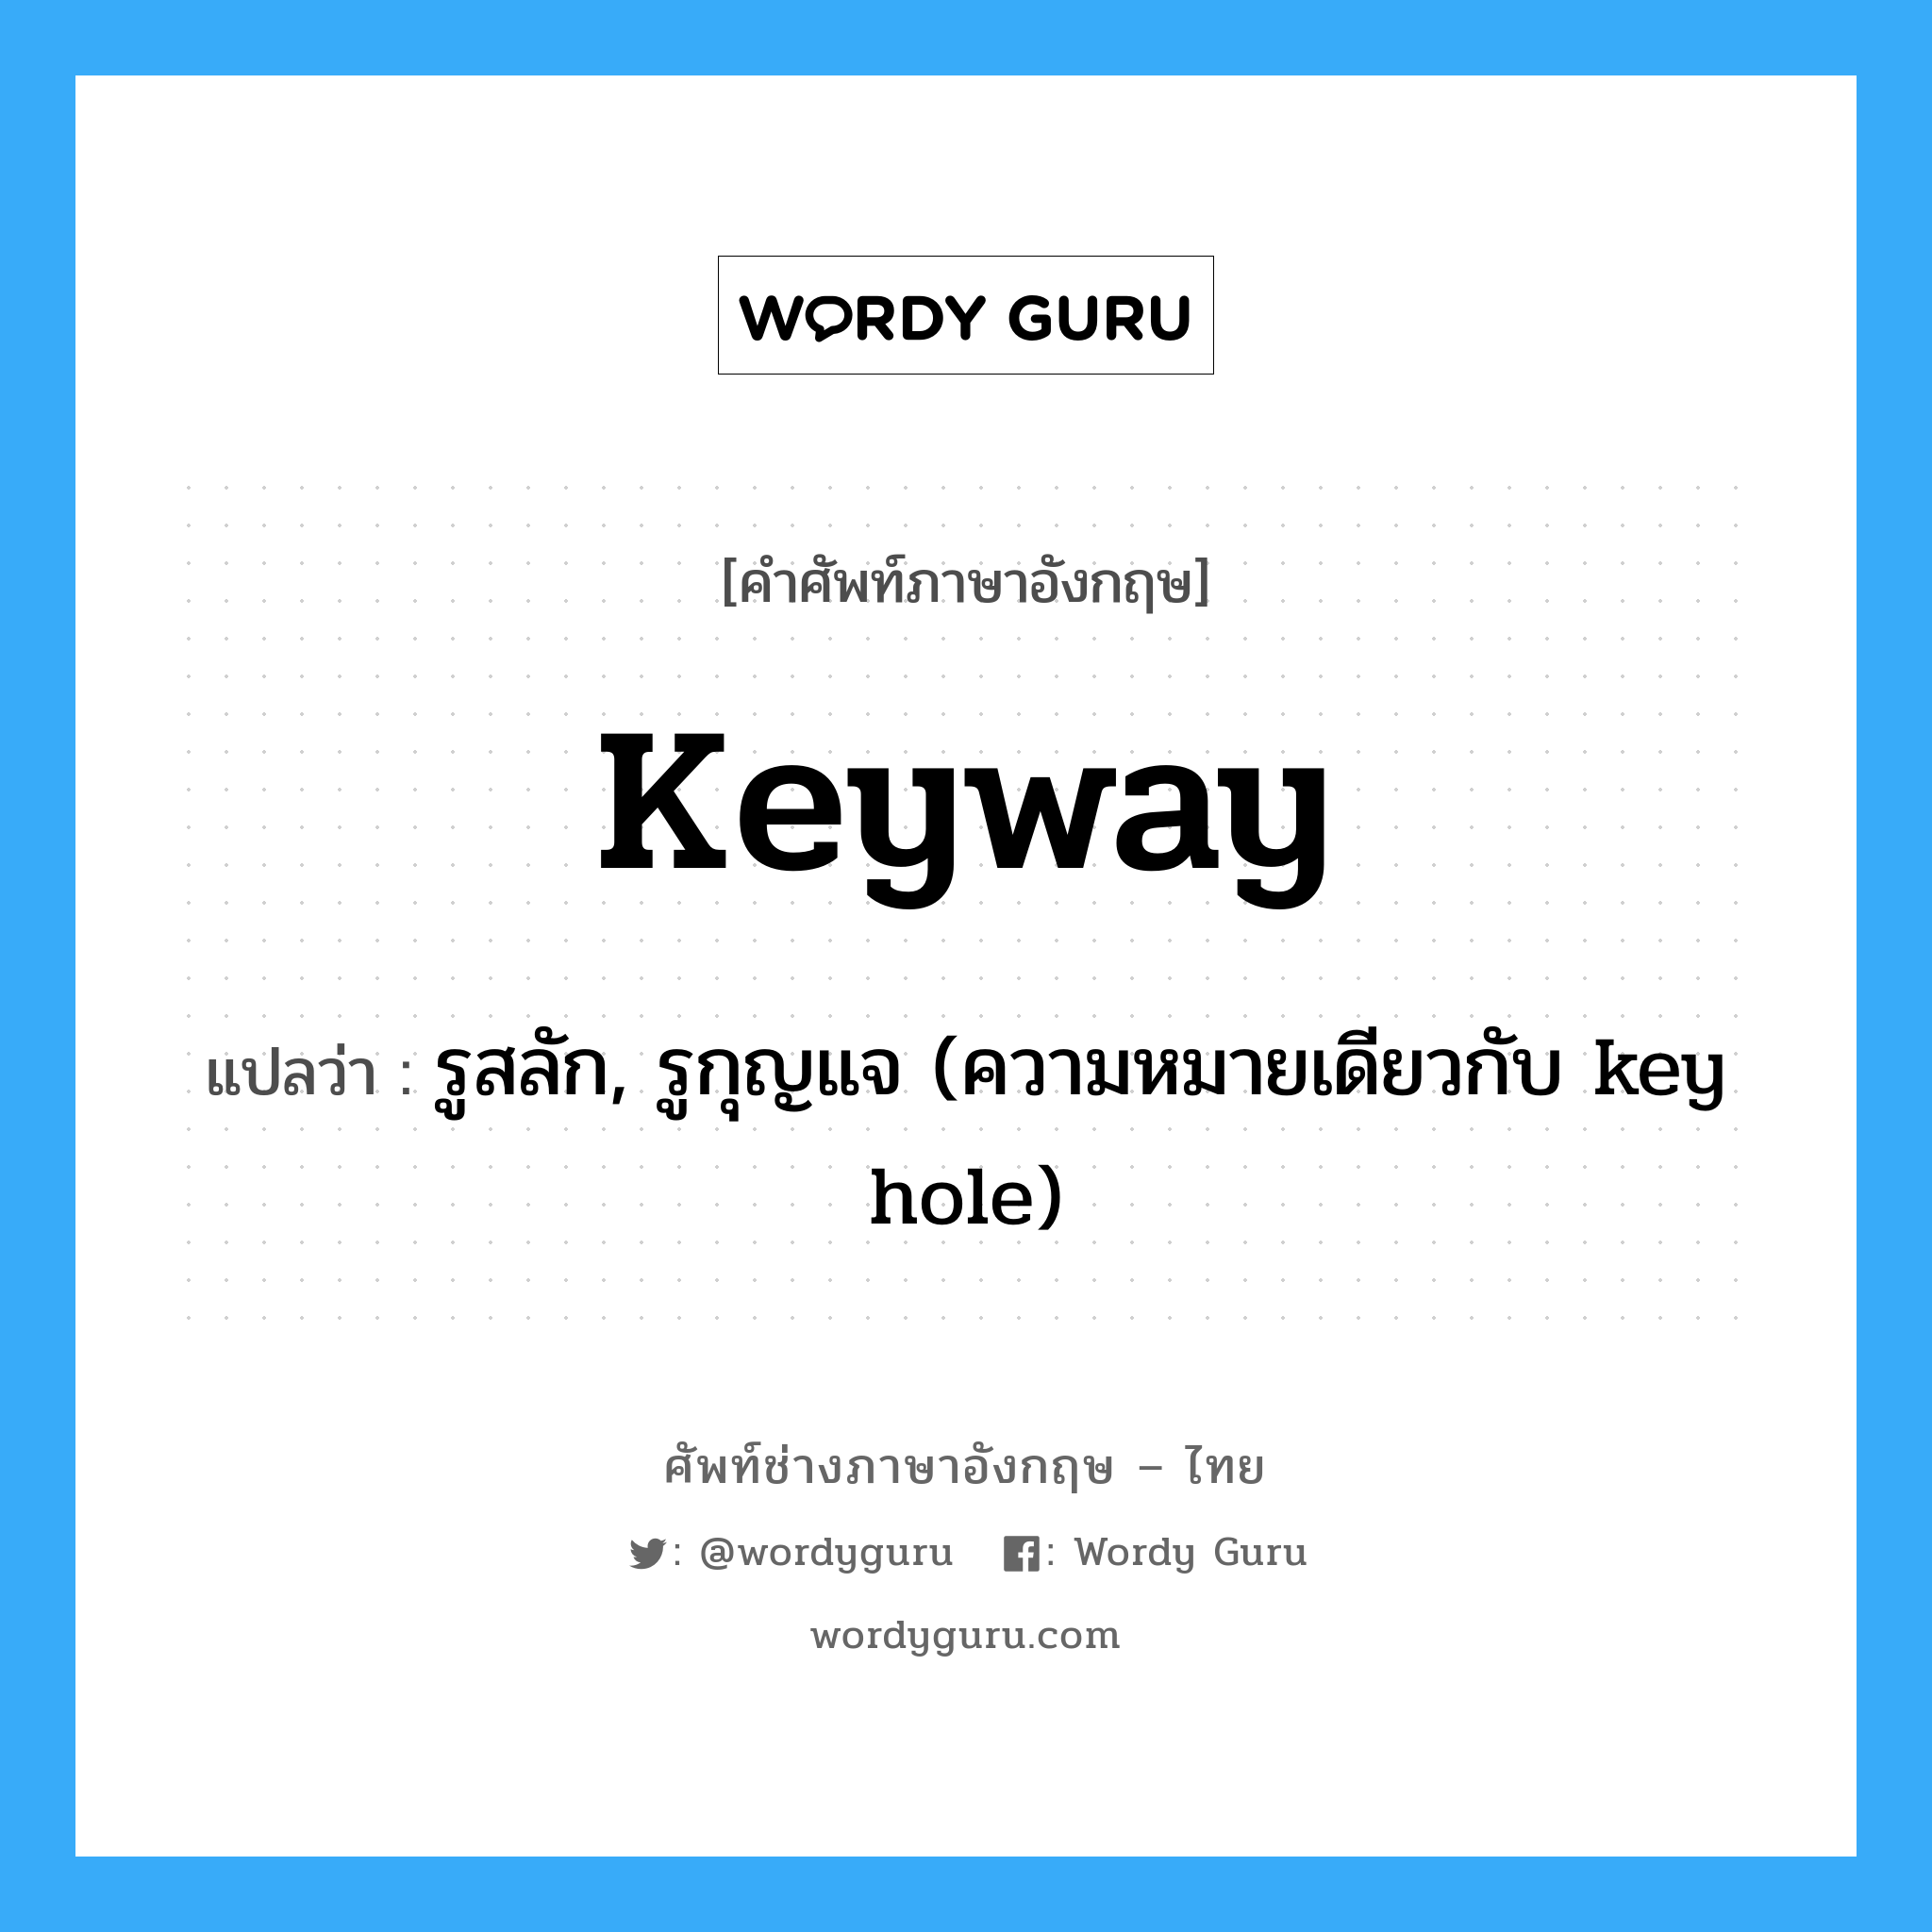 keyway แปลว่า?, คำศัพท์ช่างภาษาอังกฤษ - ไทย keyway คำศัพท์ภาษาอังกฤษ keyway แปลว่า รูสลัก, รูกุญแจ (ความหมายเดียวกับ key hole)